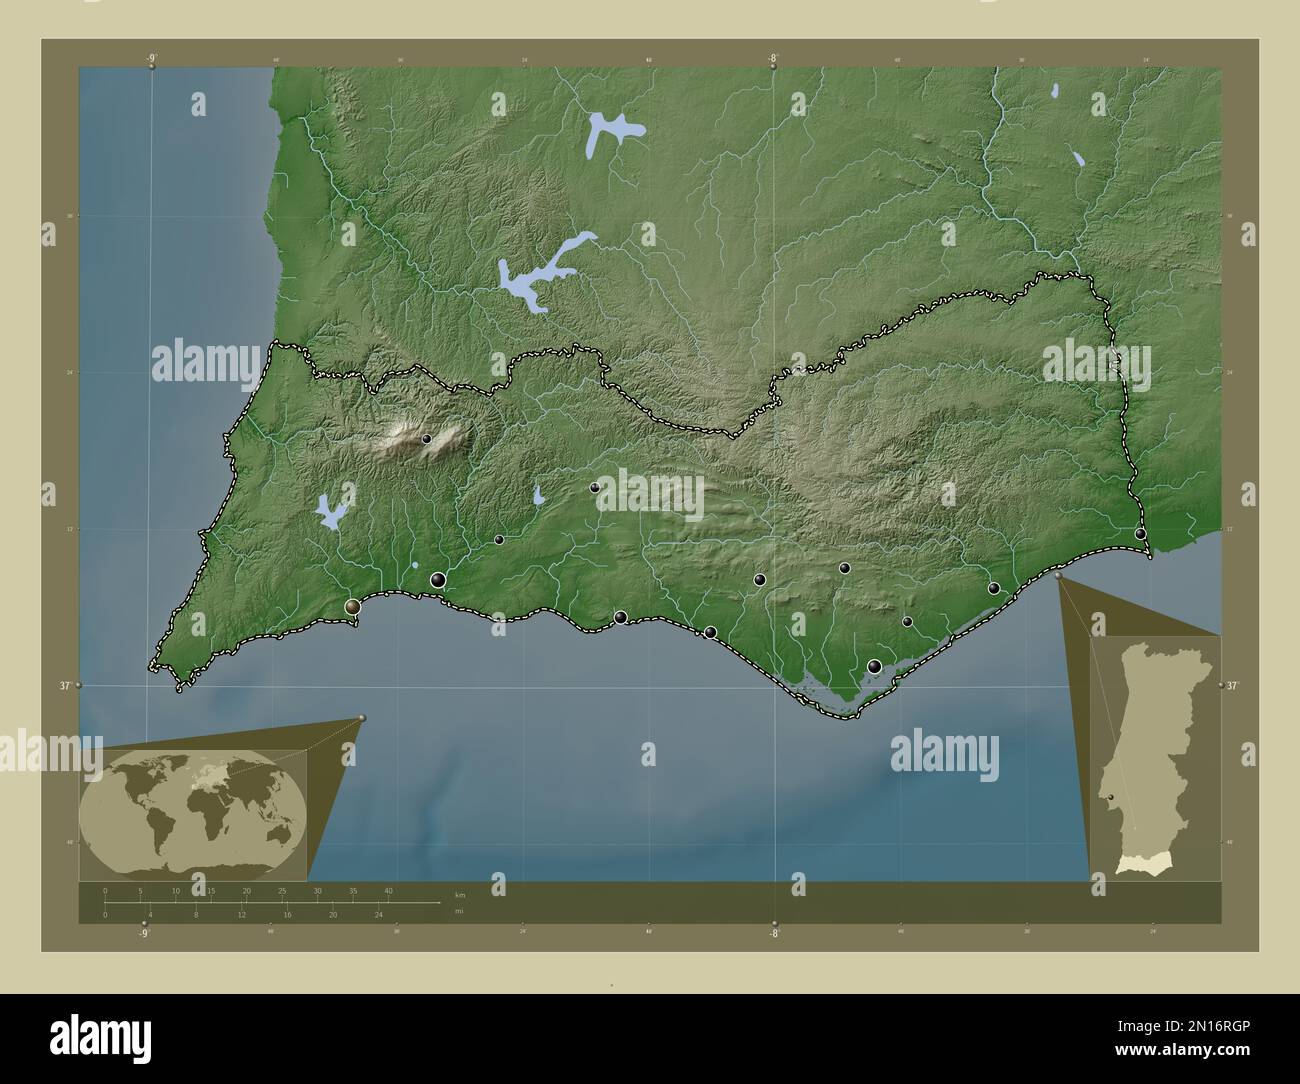 Faro, der Bezirk von Portugal. Höhenkarte im Wiki-Stil mit Seen und Flüssen. Standorte der wichtigsten Städte der Region. Ecke Zusatzposition Stockfoto